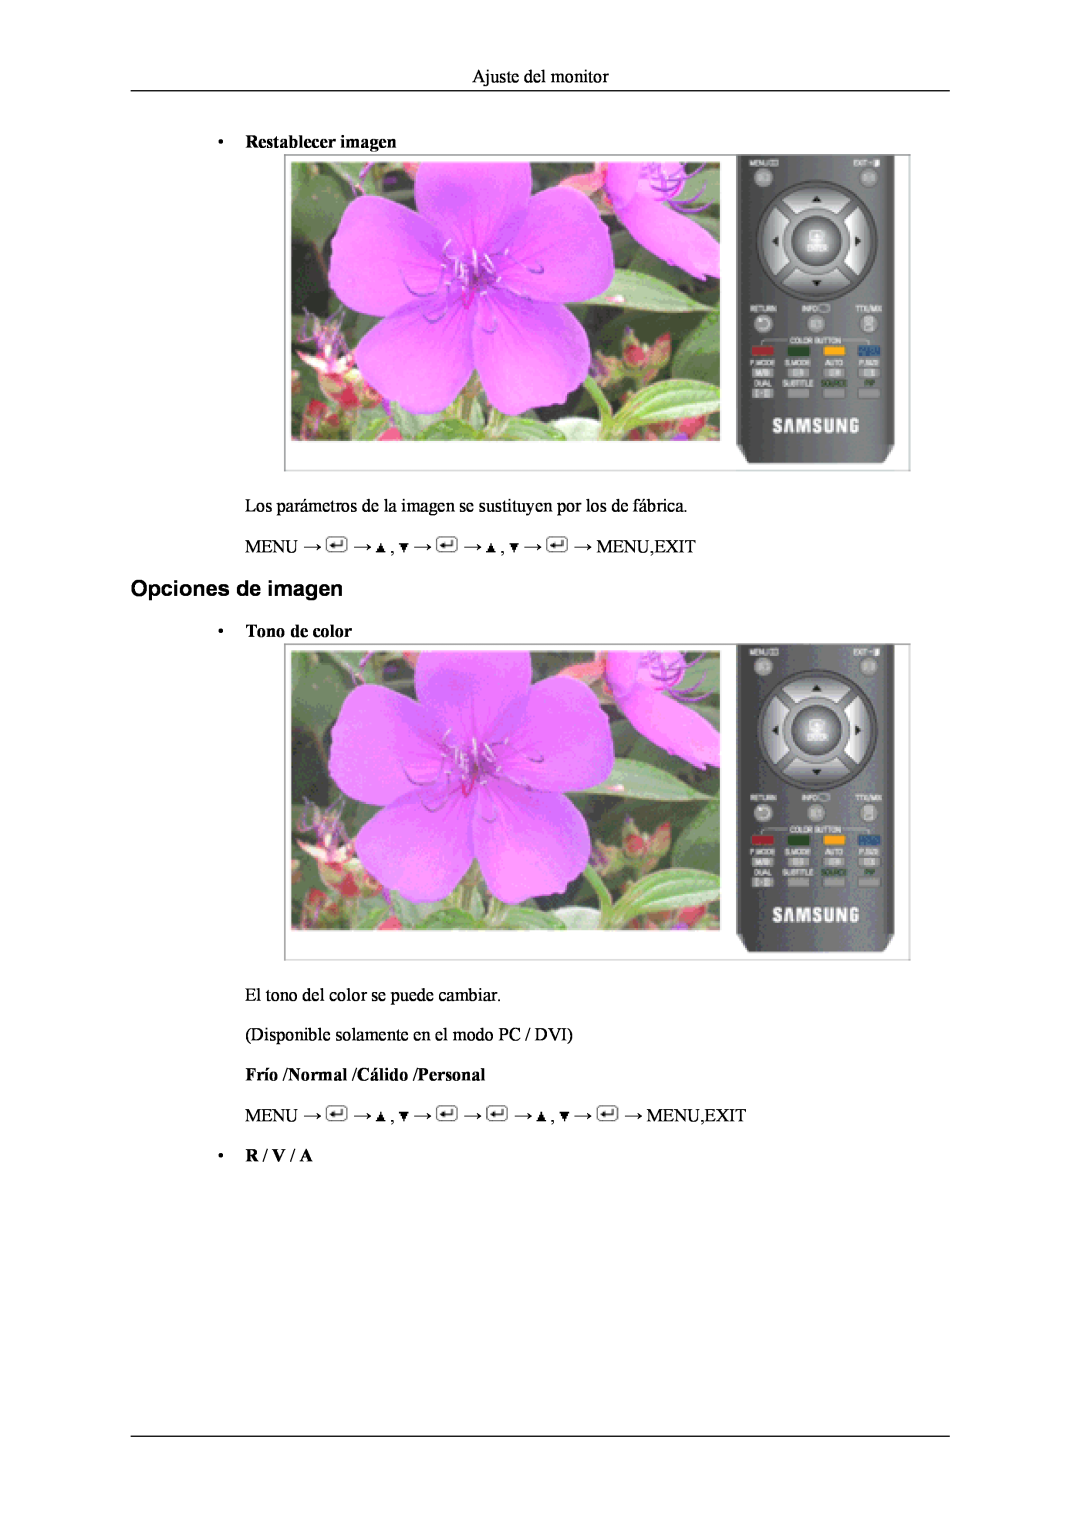 Samsung LS19CFVKH/EN, LS19CFVKF/EN, LS19CFEKF/EN manual Opciones de imagen, Restablecer imagen, Tono de color, R / V / A 